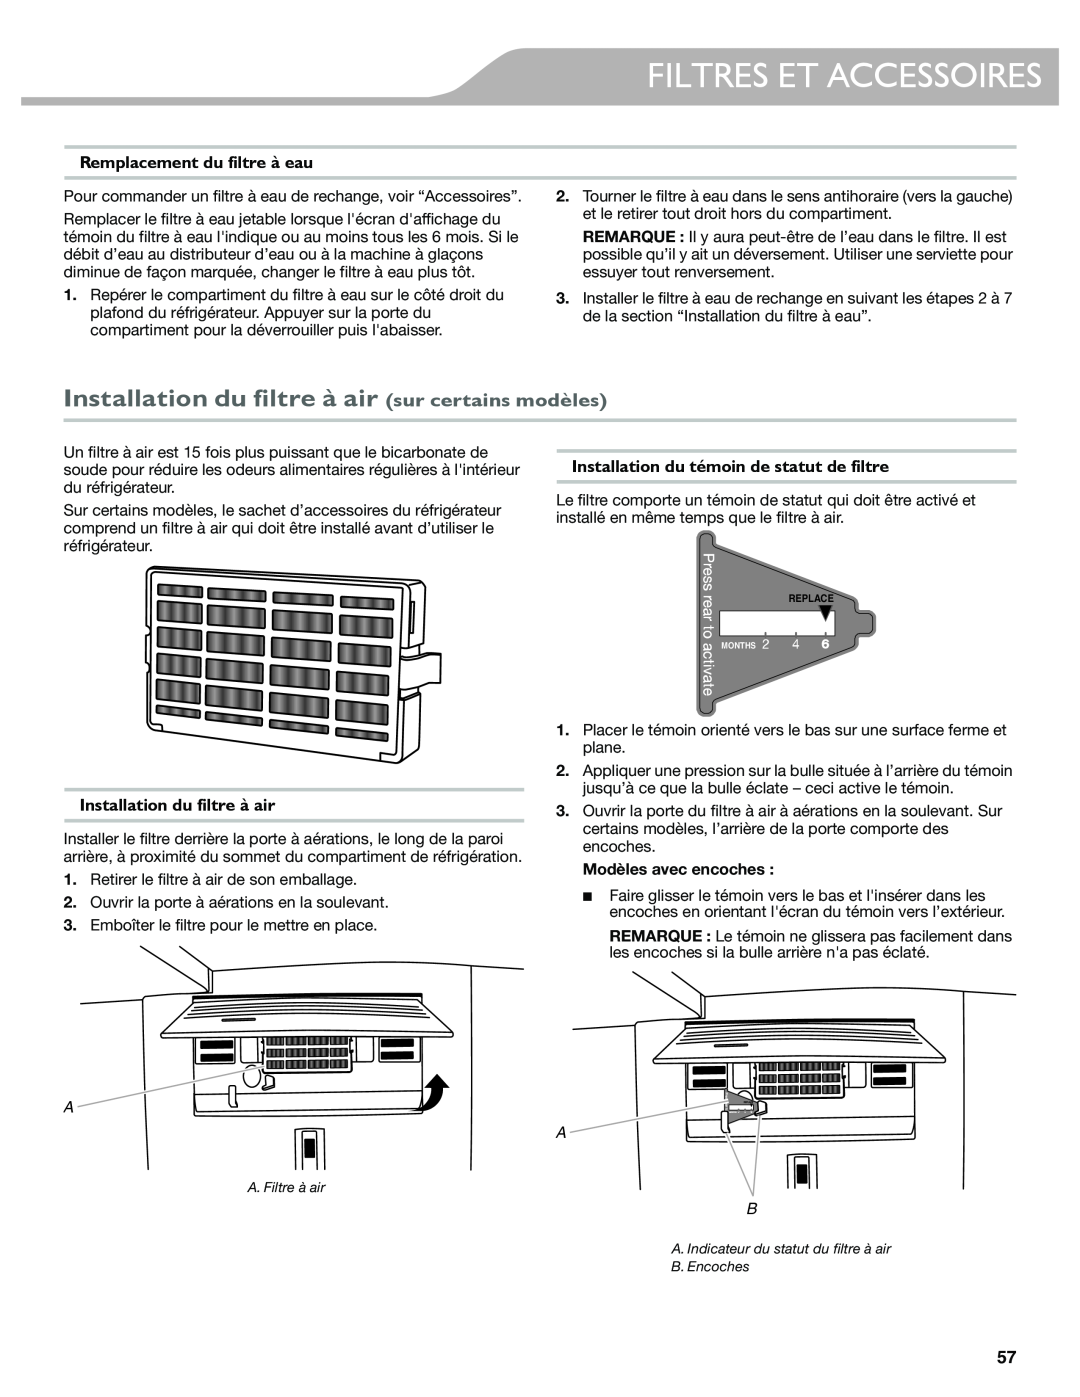 KitchenAid W10417002A manual Installation du filtre à air sur certains modèles, Remplacement du filtre à eau 